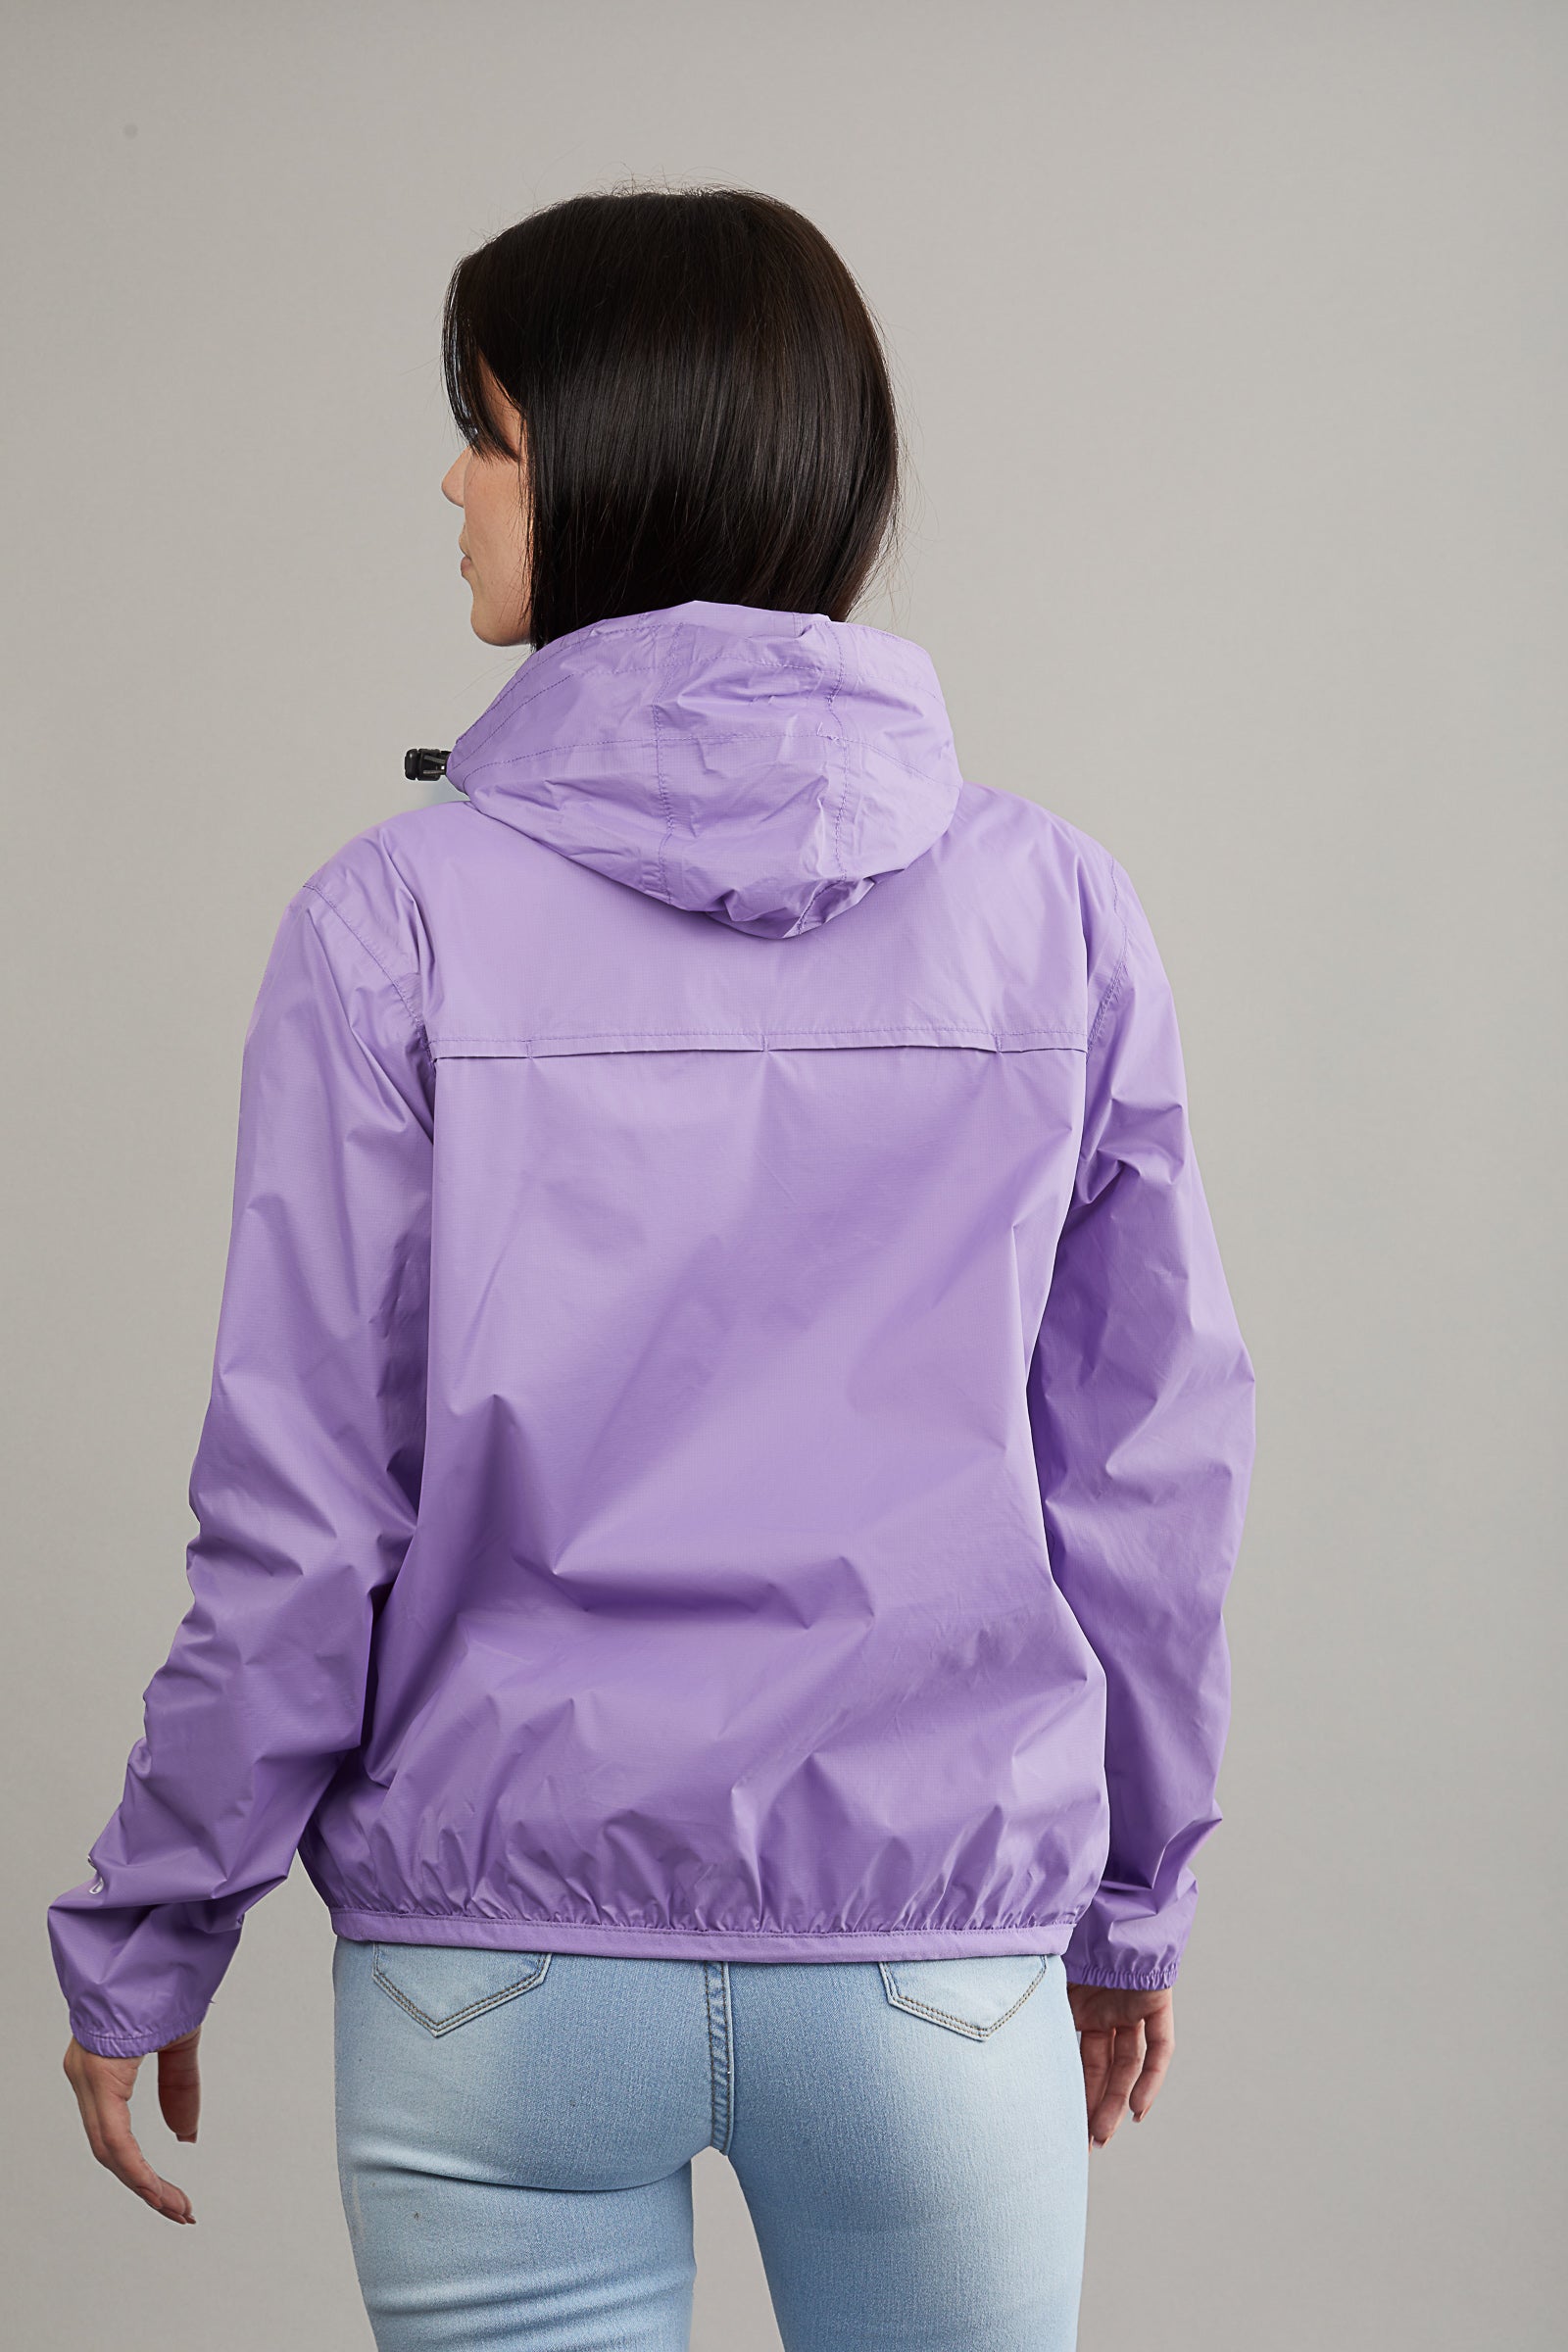 Alex - light purple quarter zip packable rain jacket - O8Lifestyle